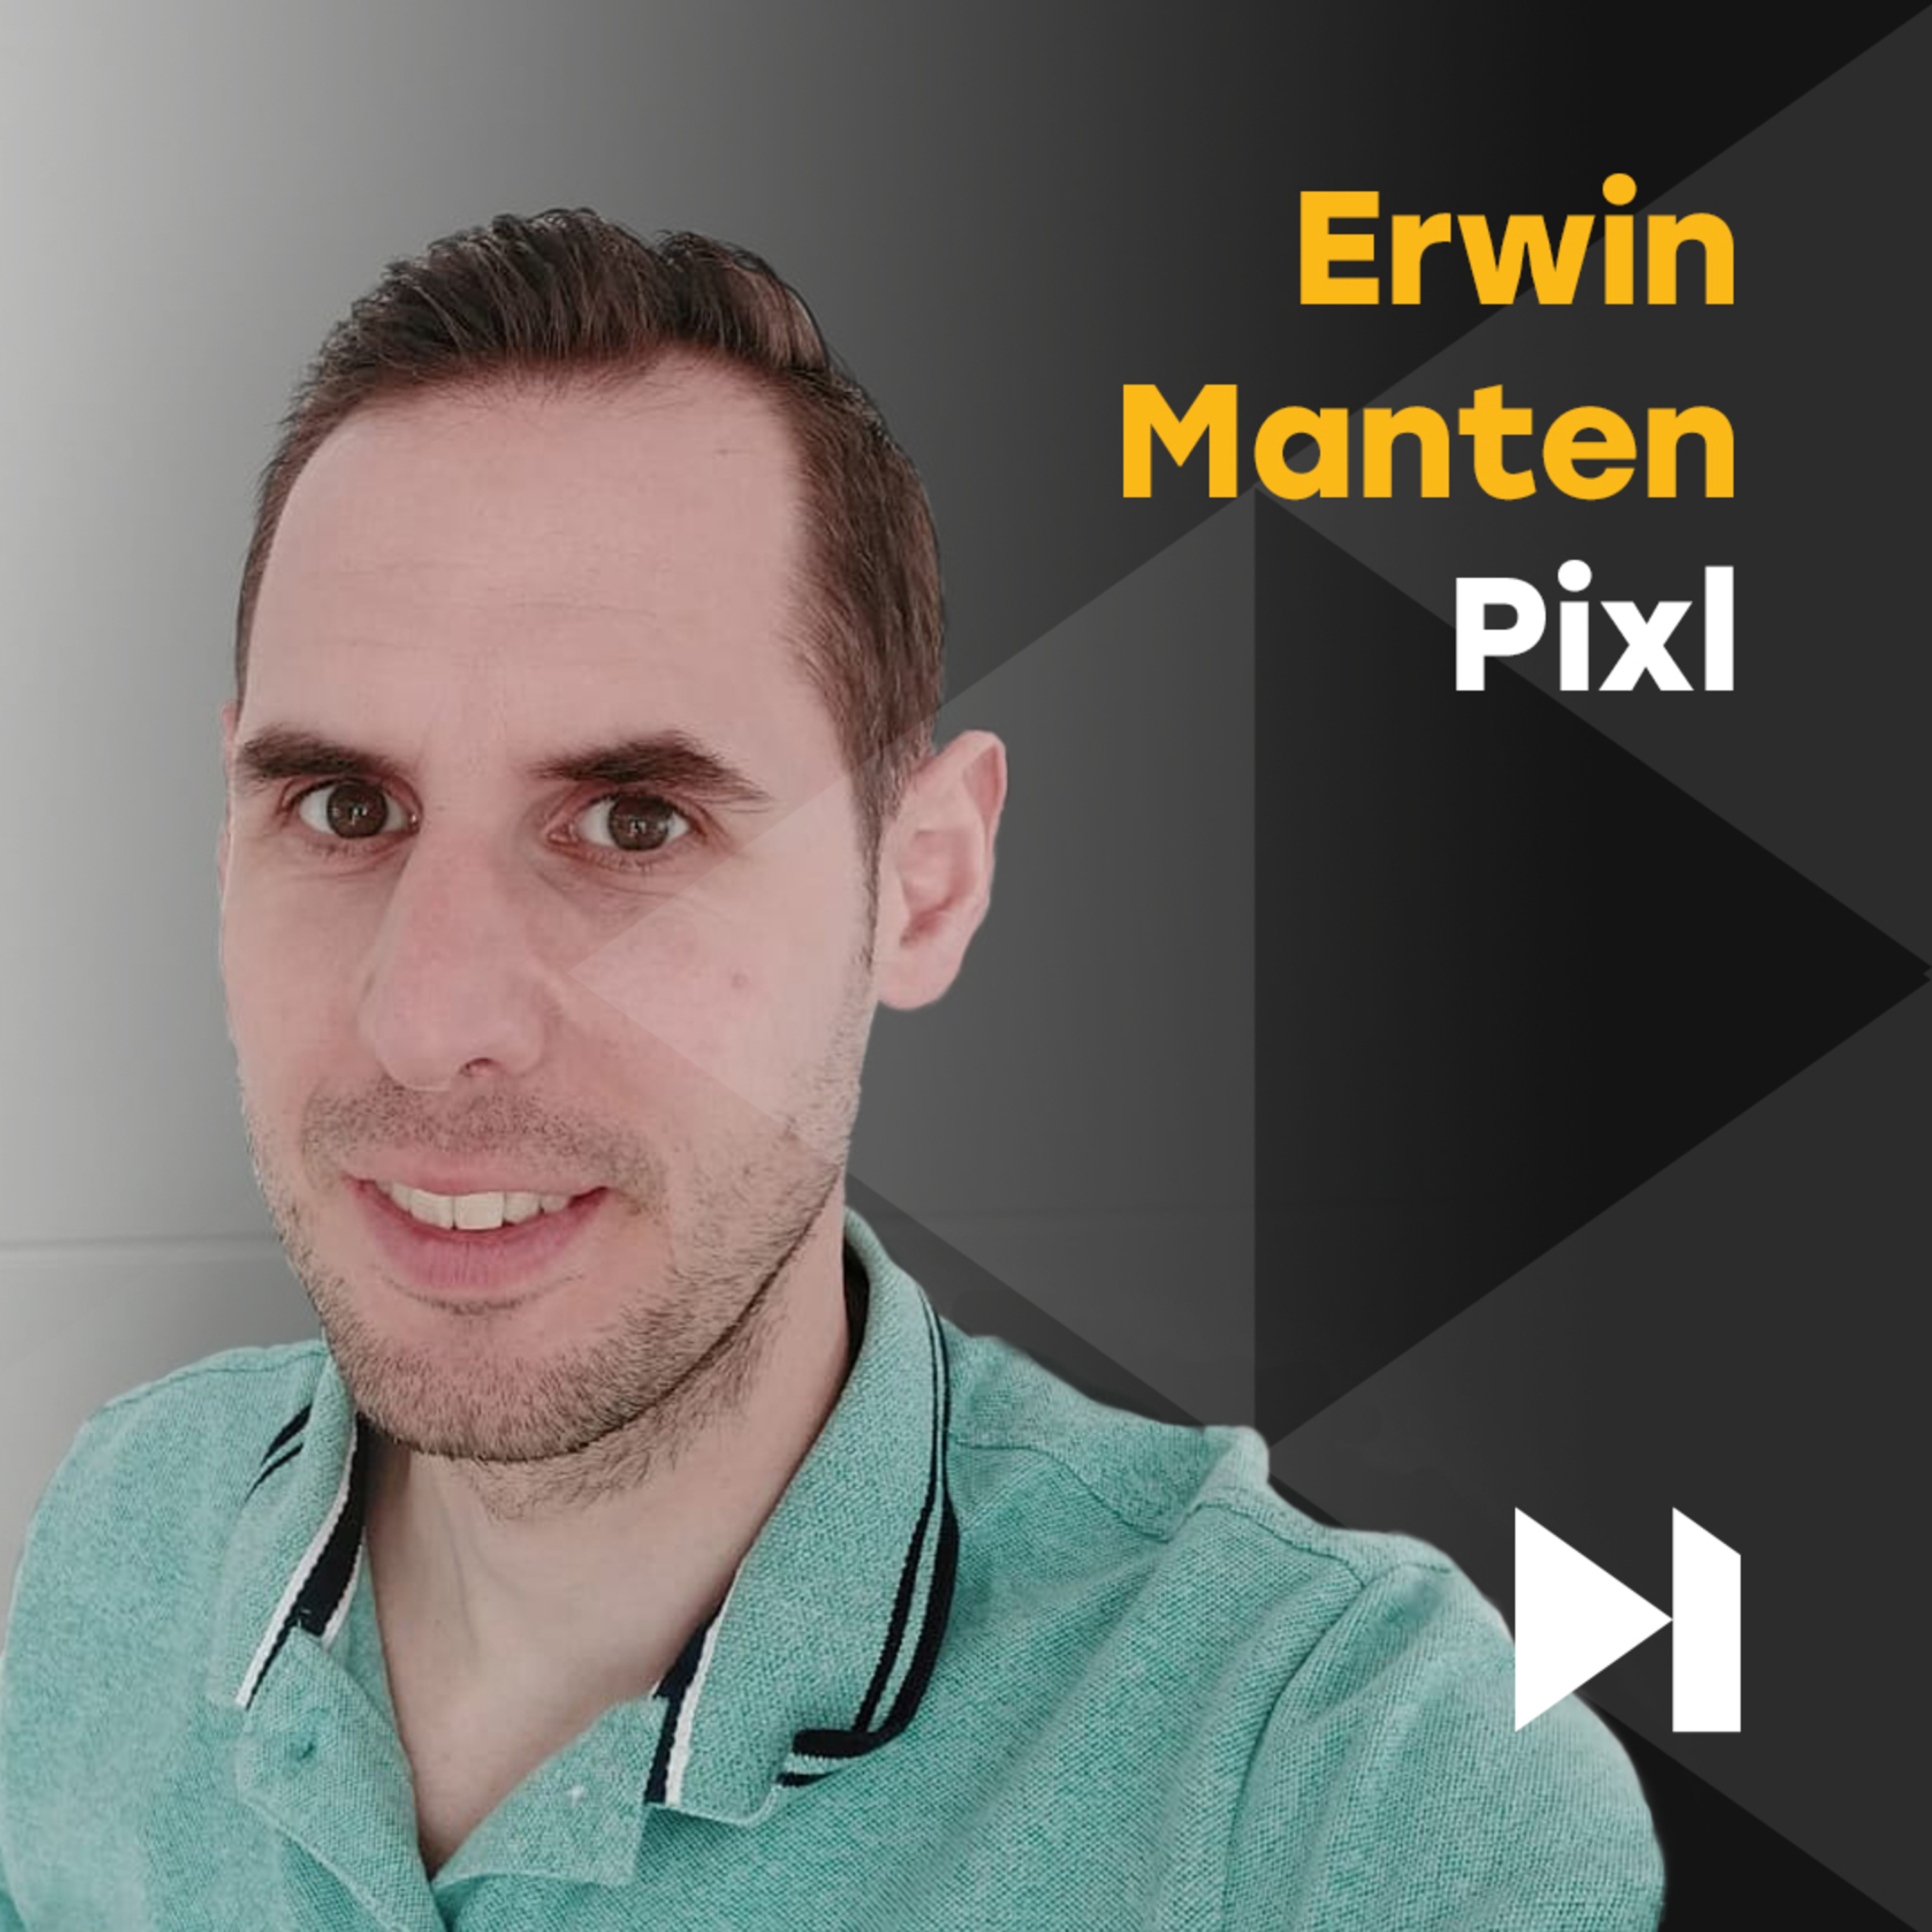 Erwin Manten van Pixl